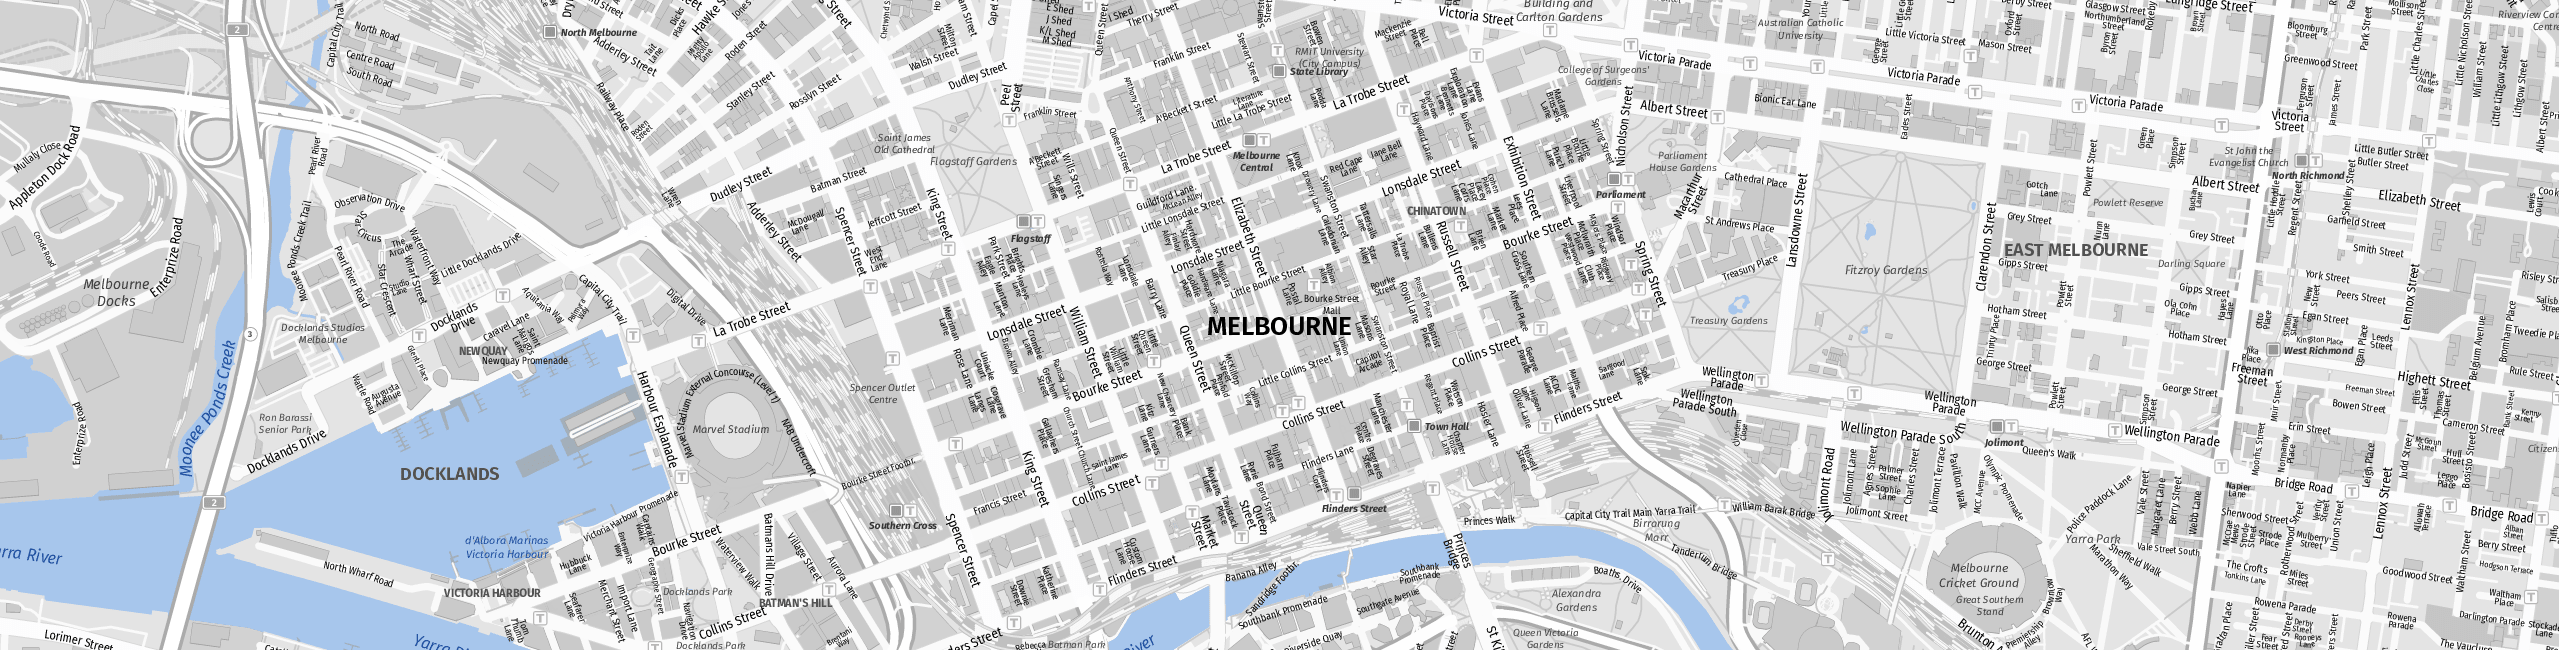 Stadtplan Melbourne zum Downloaden.